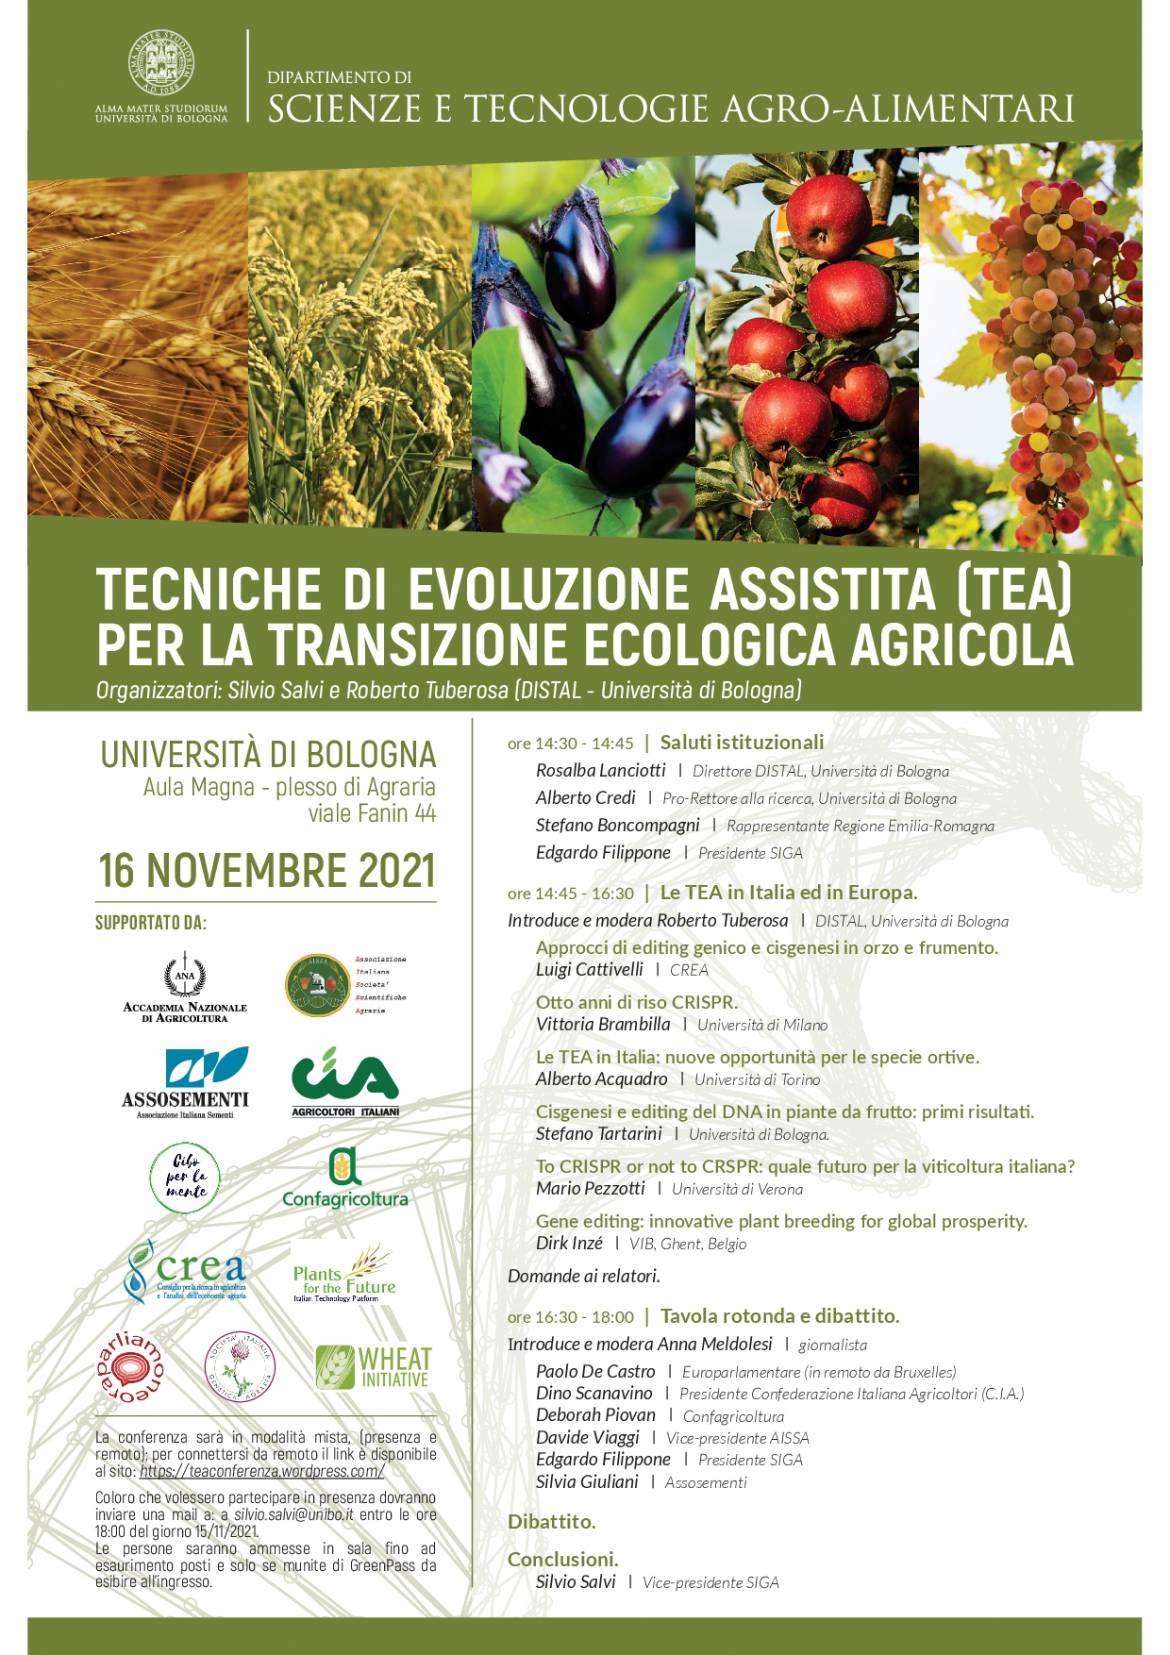 Tecniche di evoluzione assistita (TEA) per la transizione ecologica agricola